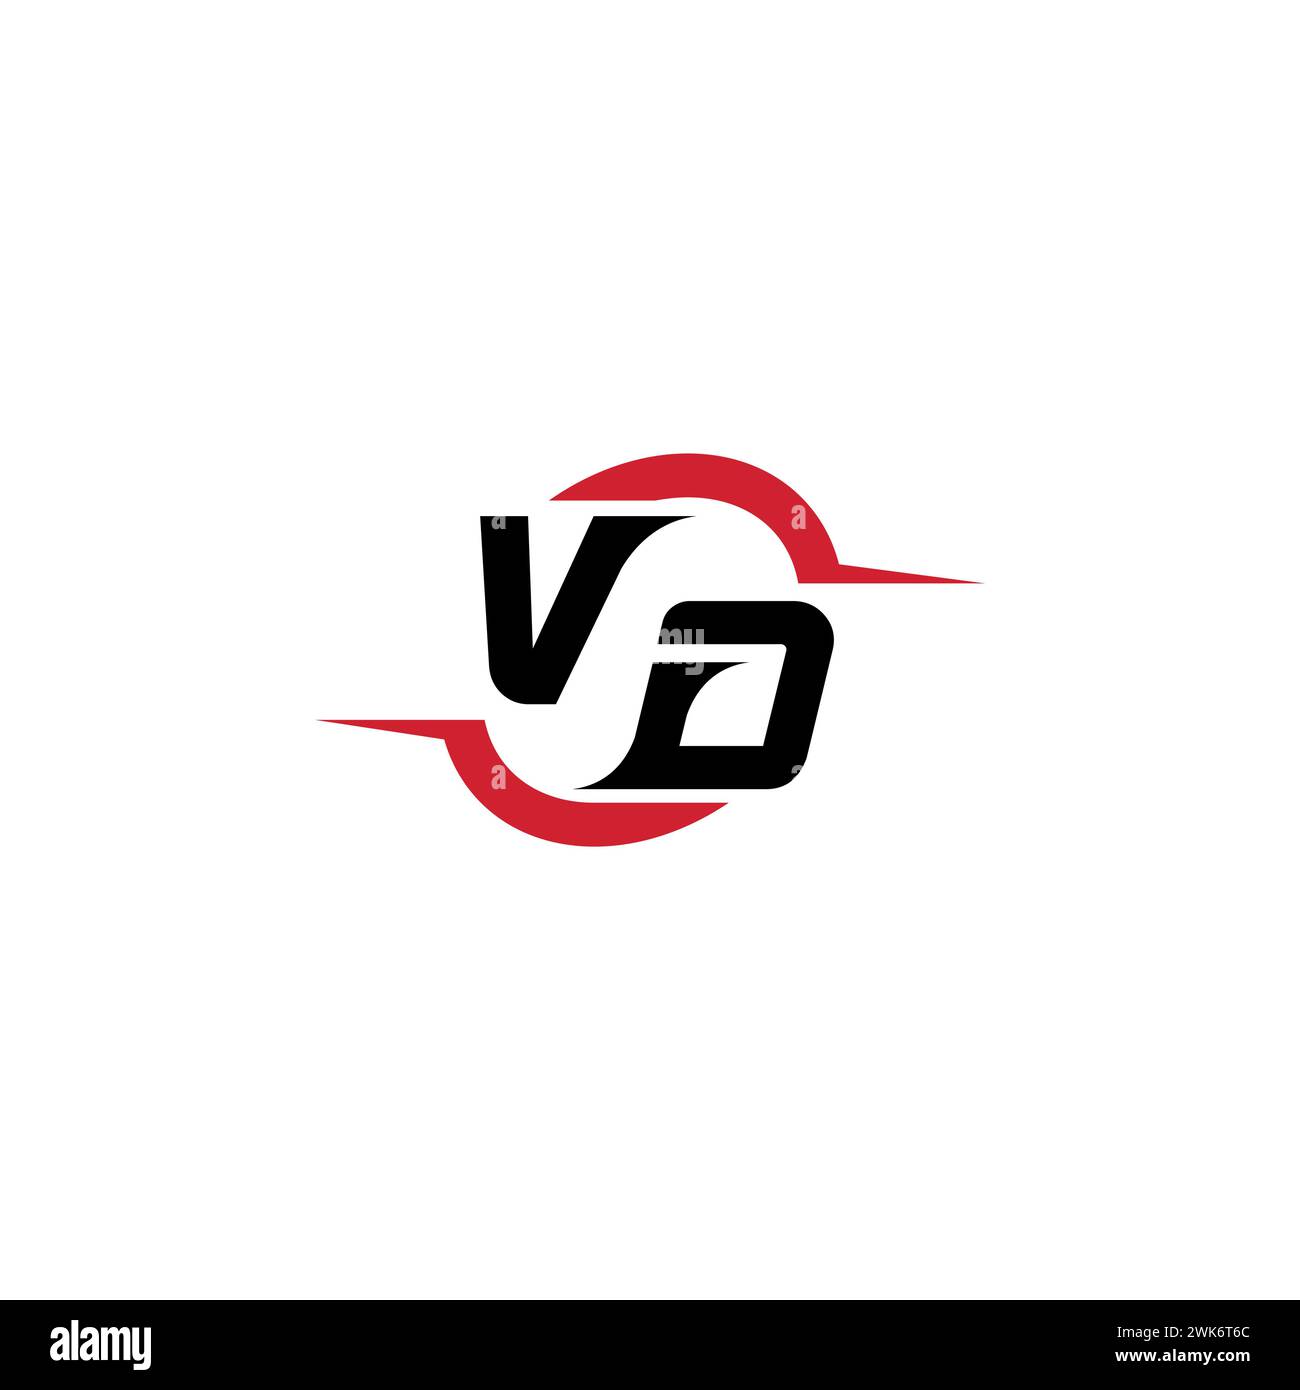 VD Initial Logo cooles und stylisches Konzept für E-Sport- oder Gaming-Logo als Inspiration Stock Vektor